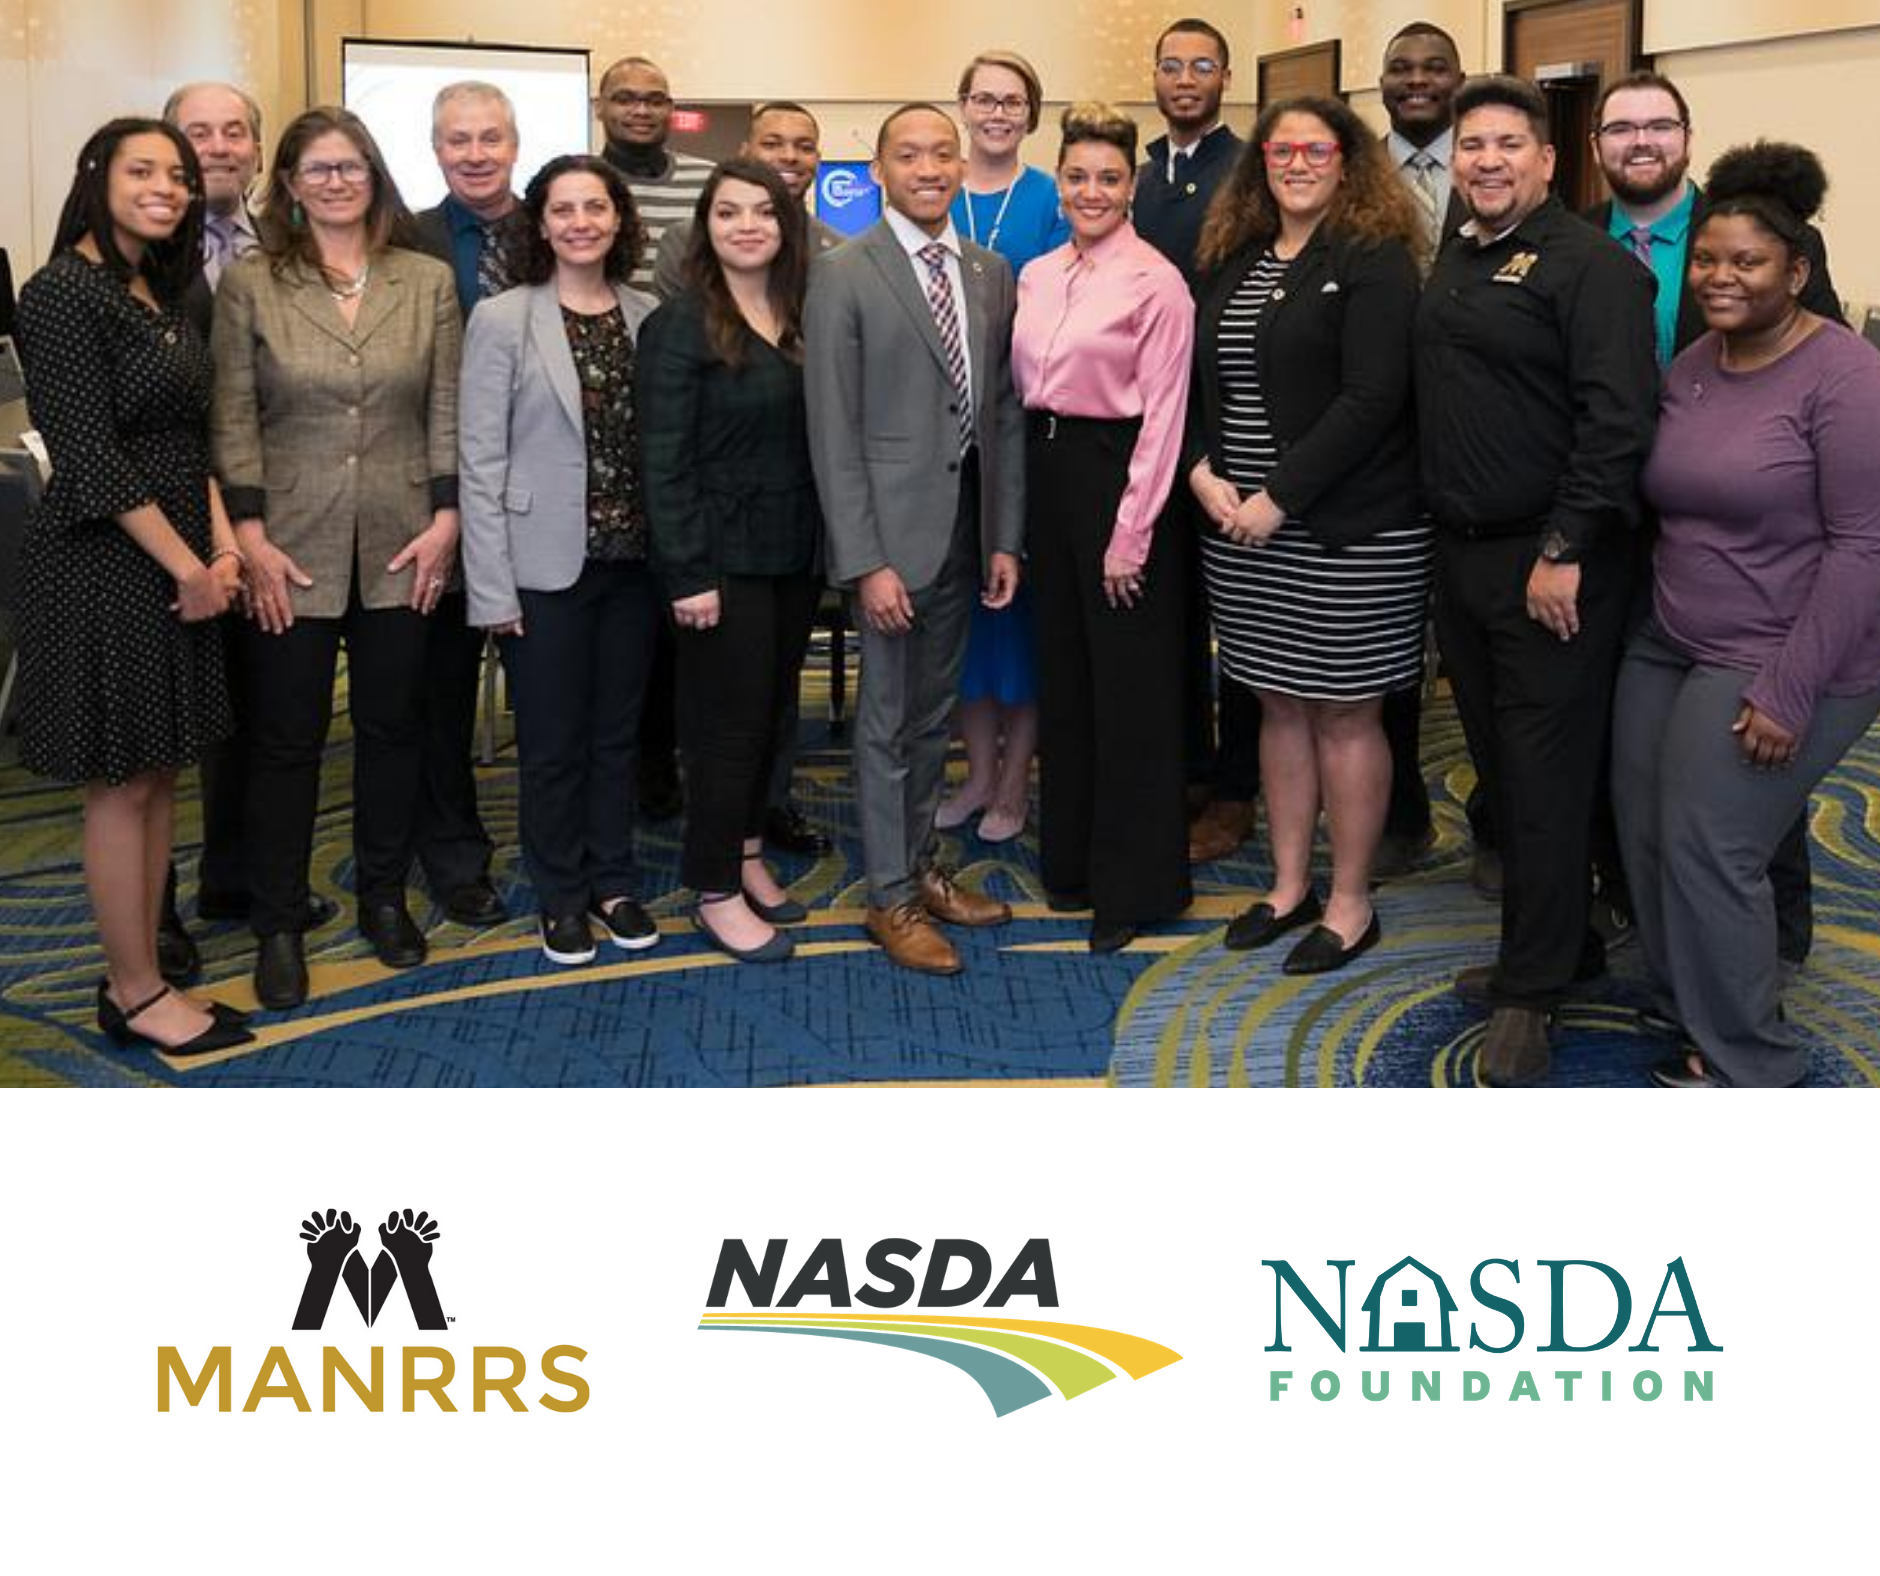 MANRRS, NASDA and the NASDA Foundation Sign Historic MOU